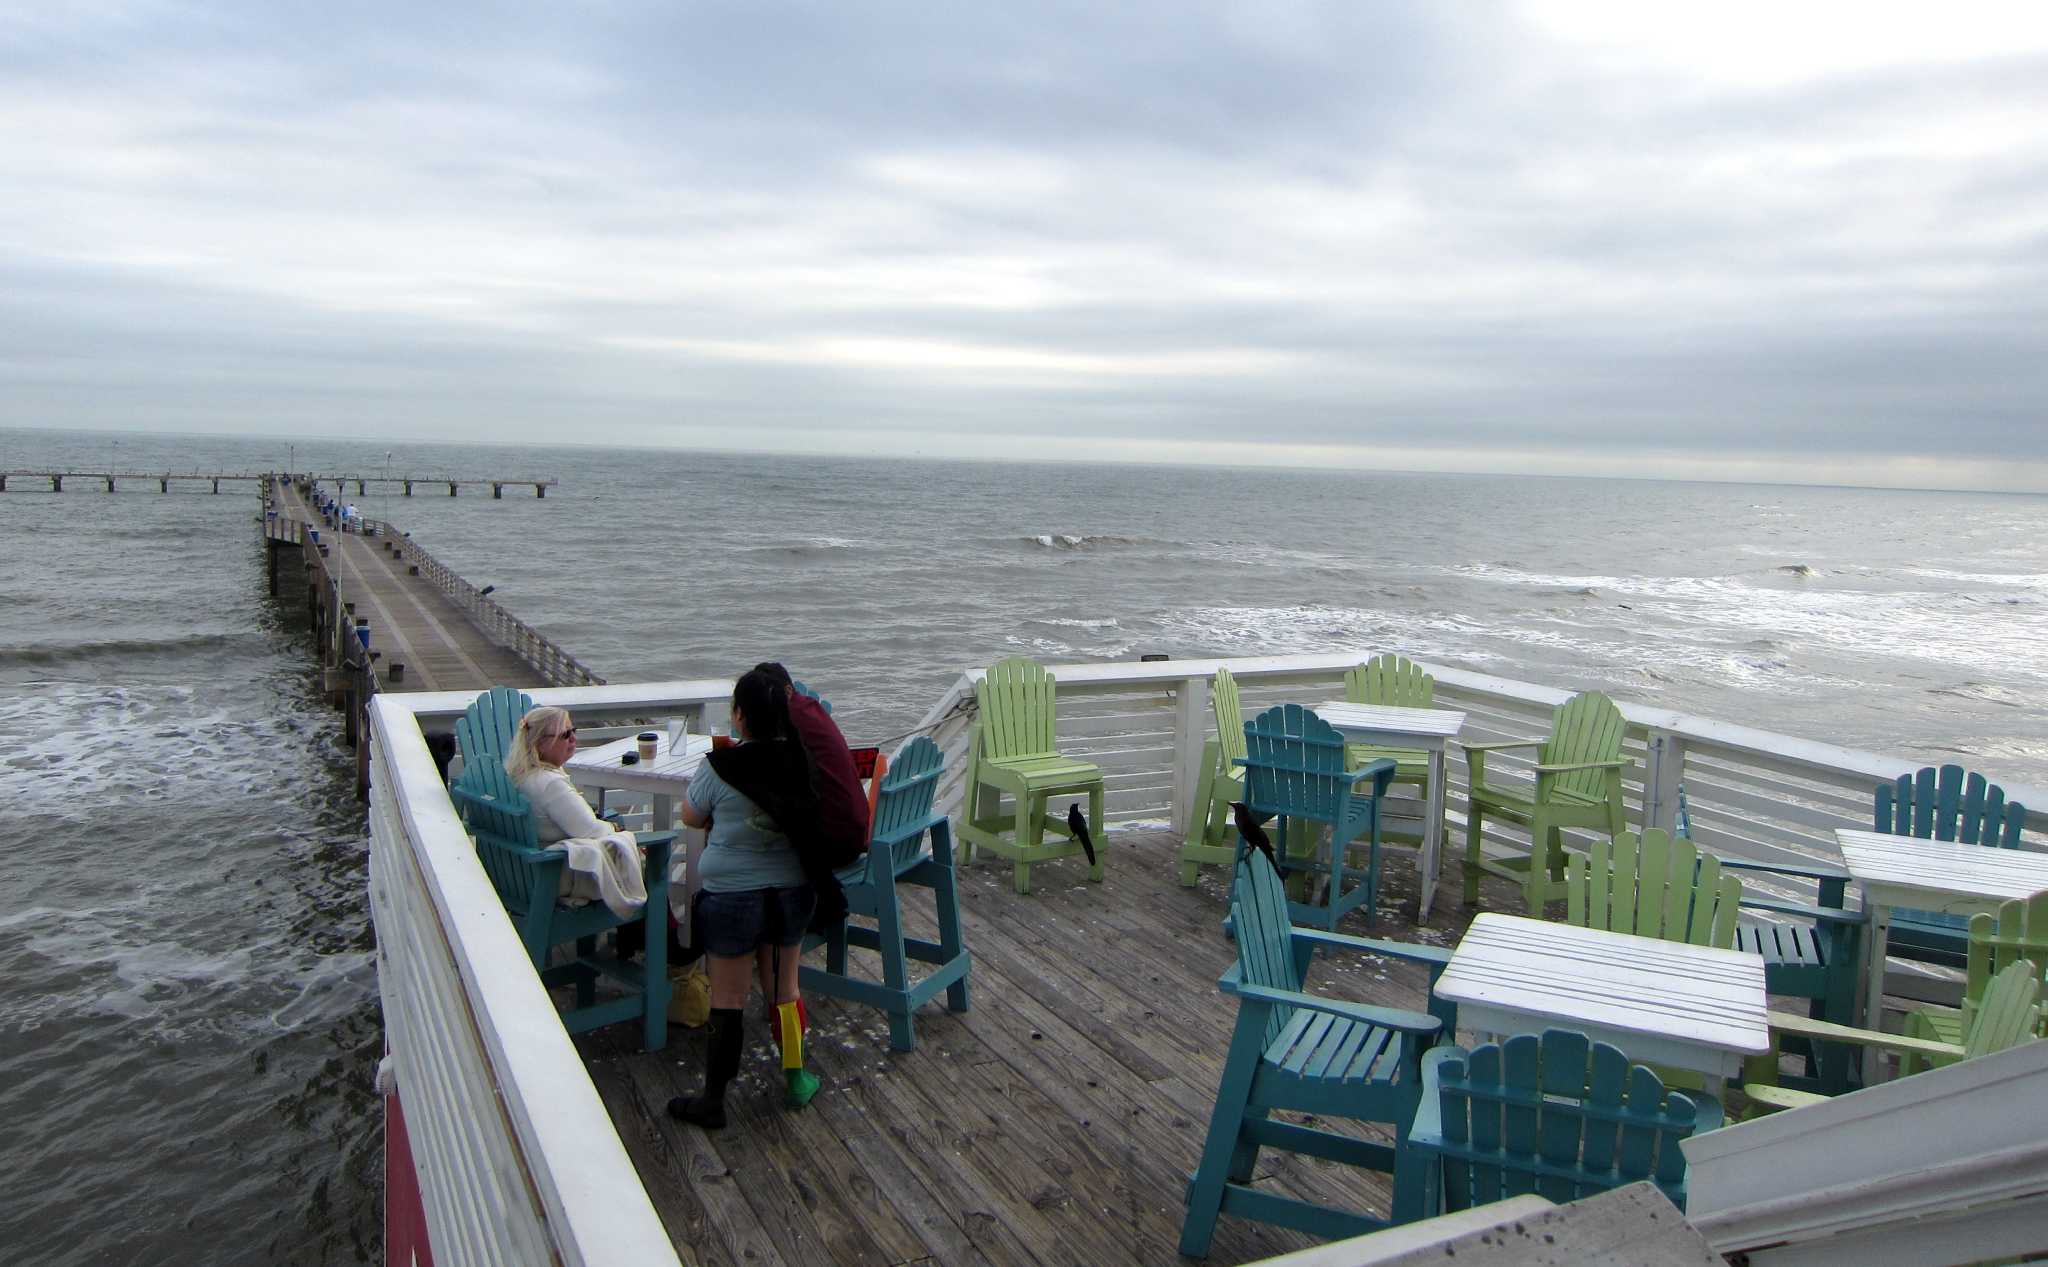 Galveston restaurant named one of best oceanside views in US